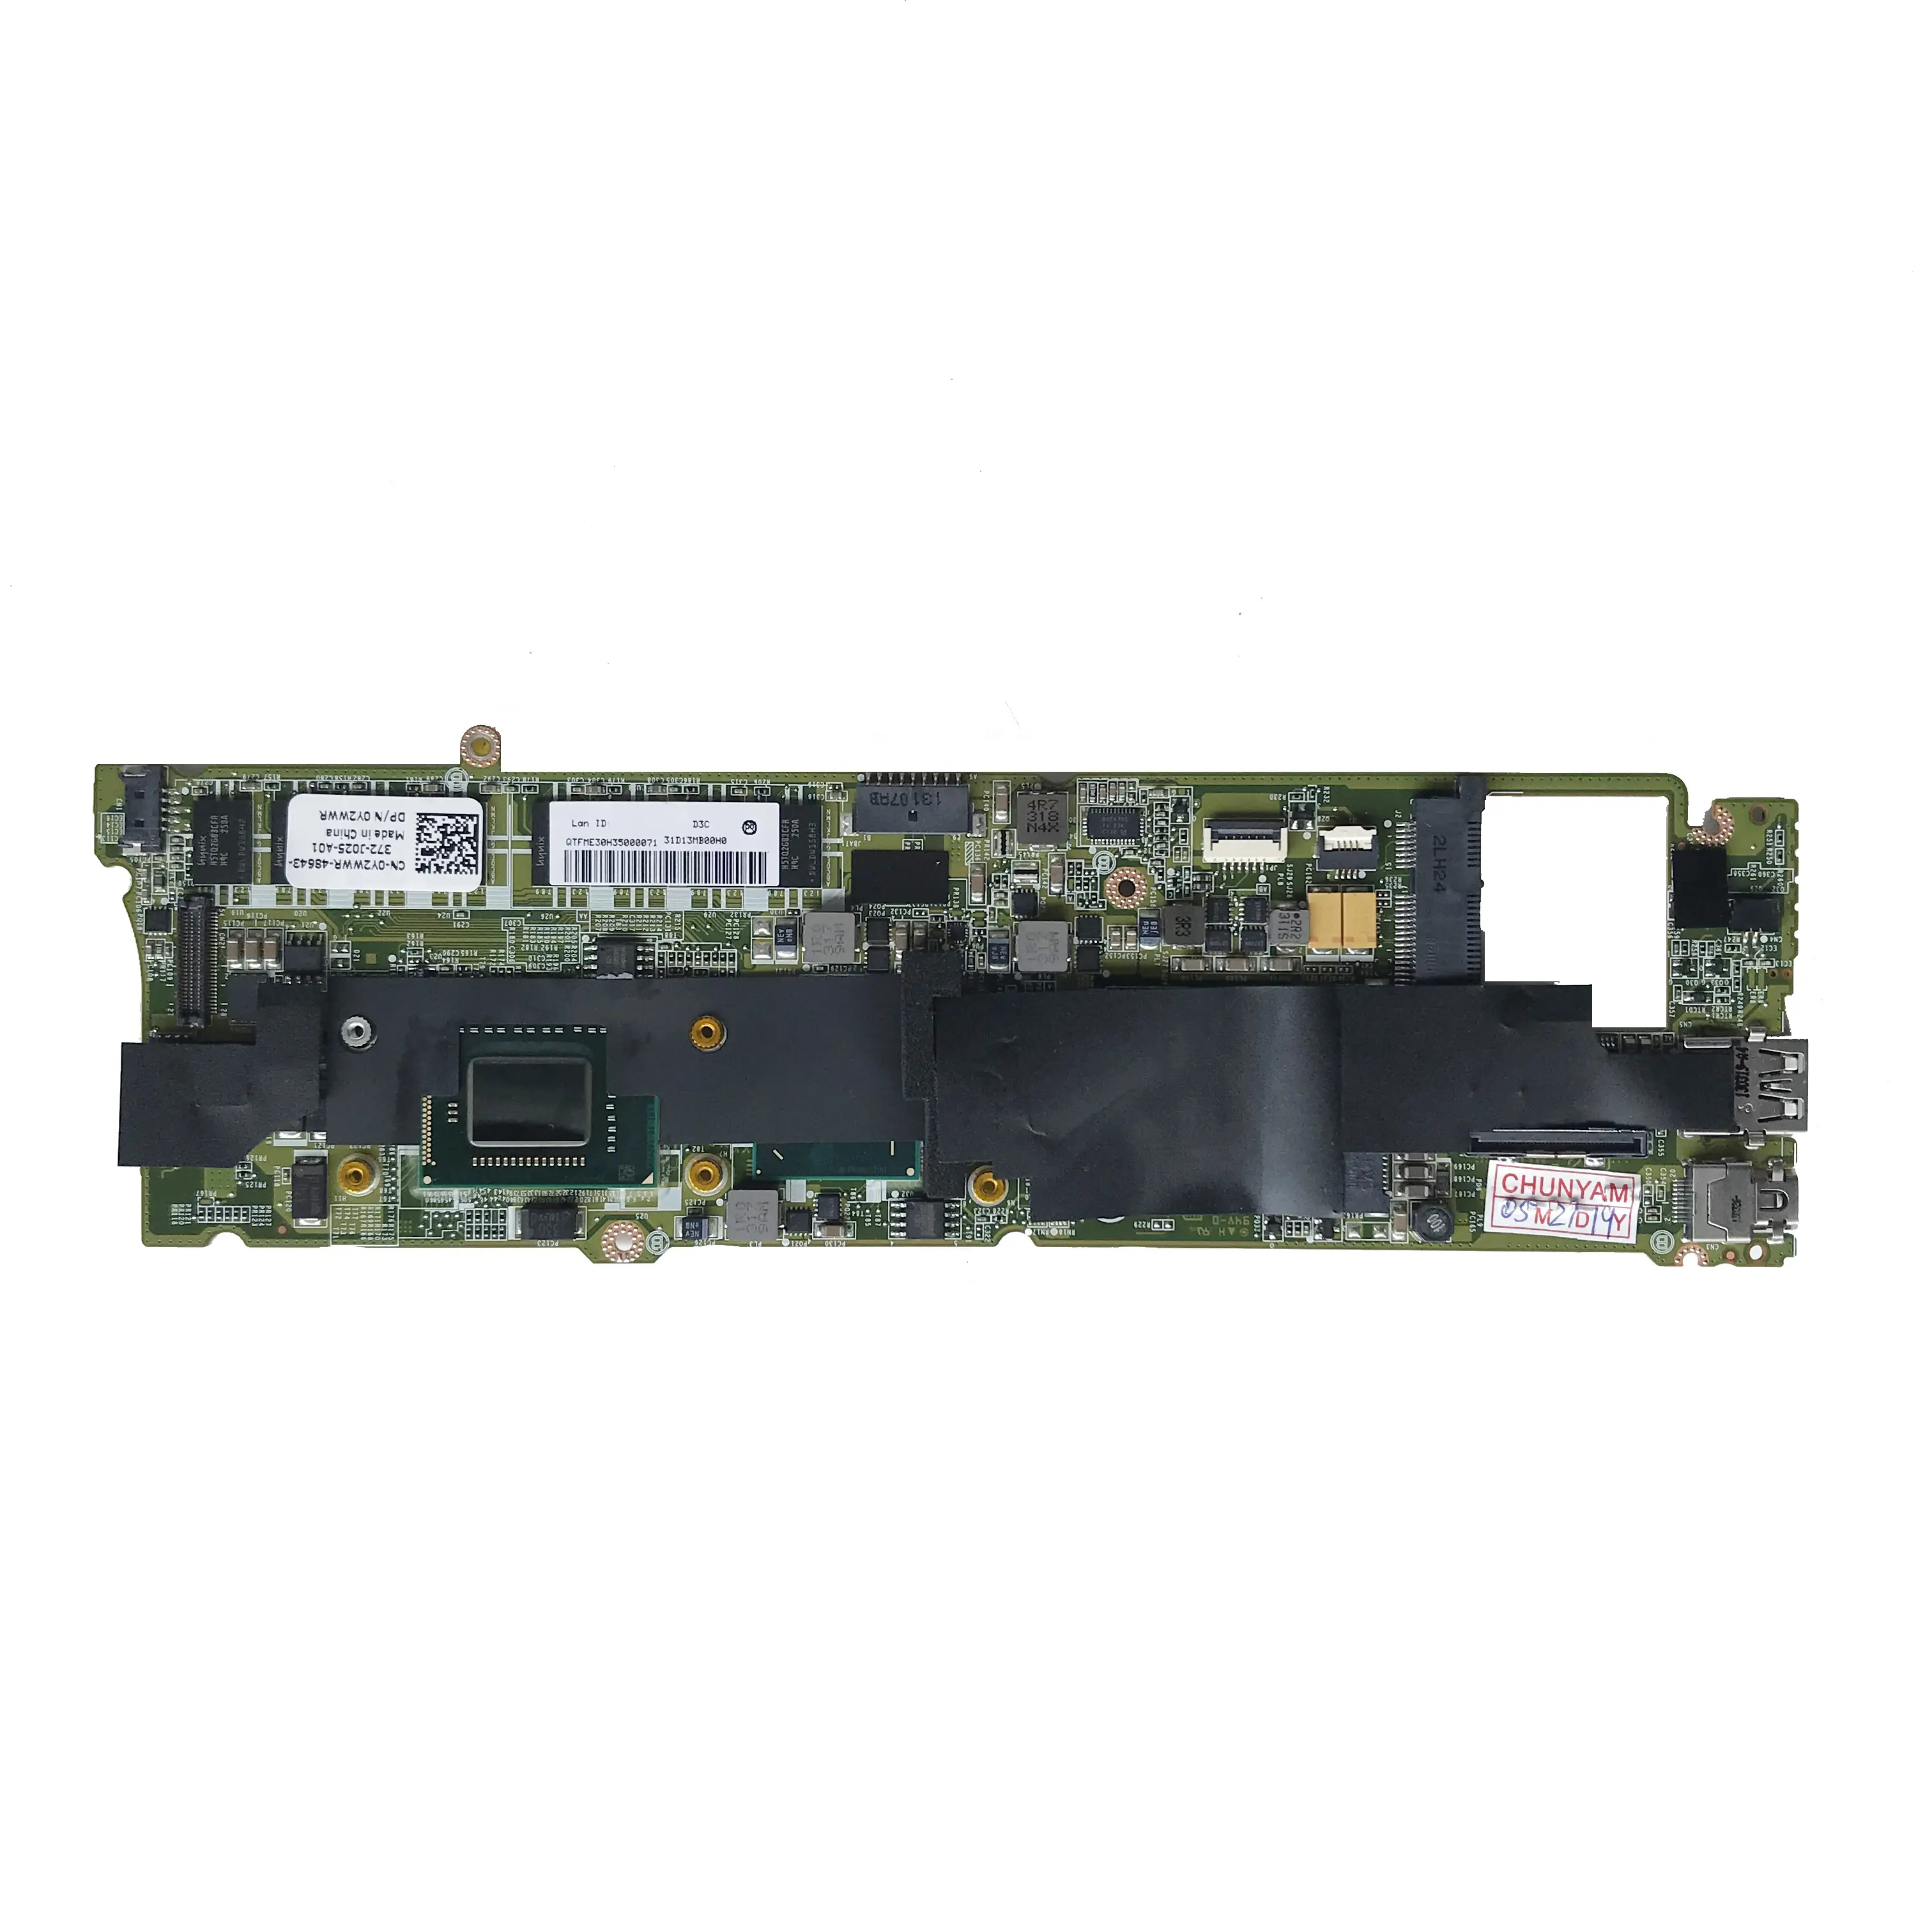 Dell XPS 13 L321X लैपटॉप मदरबोर्ड के लिए CN-0Y2WWR 0Y2WWR I5-2467M सीपीयू 4GB रैम MB 100% परीक्षण के साथ तेजी से जहाज